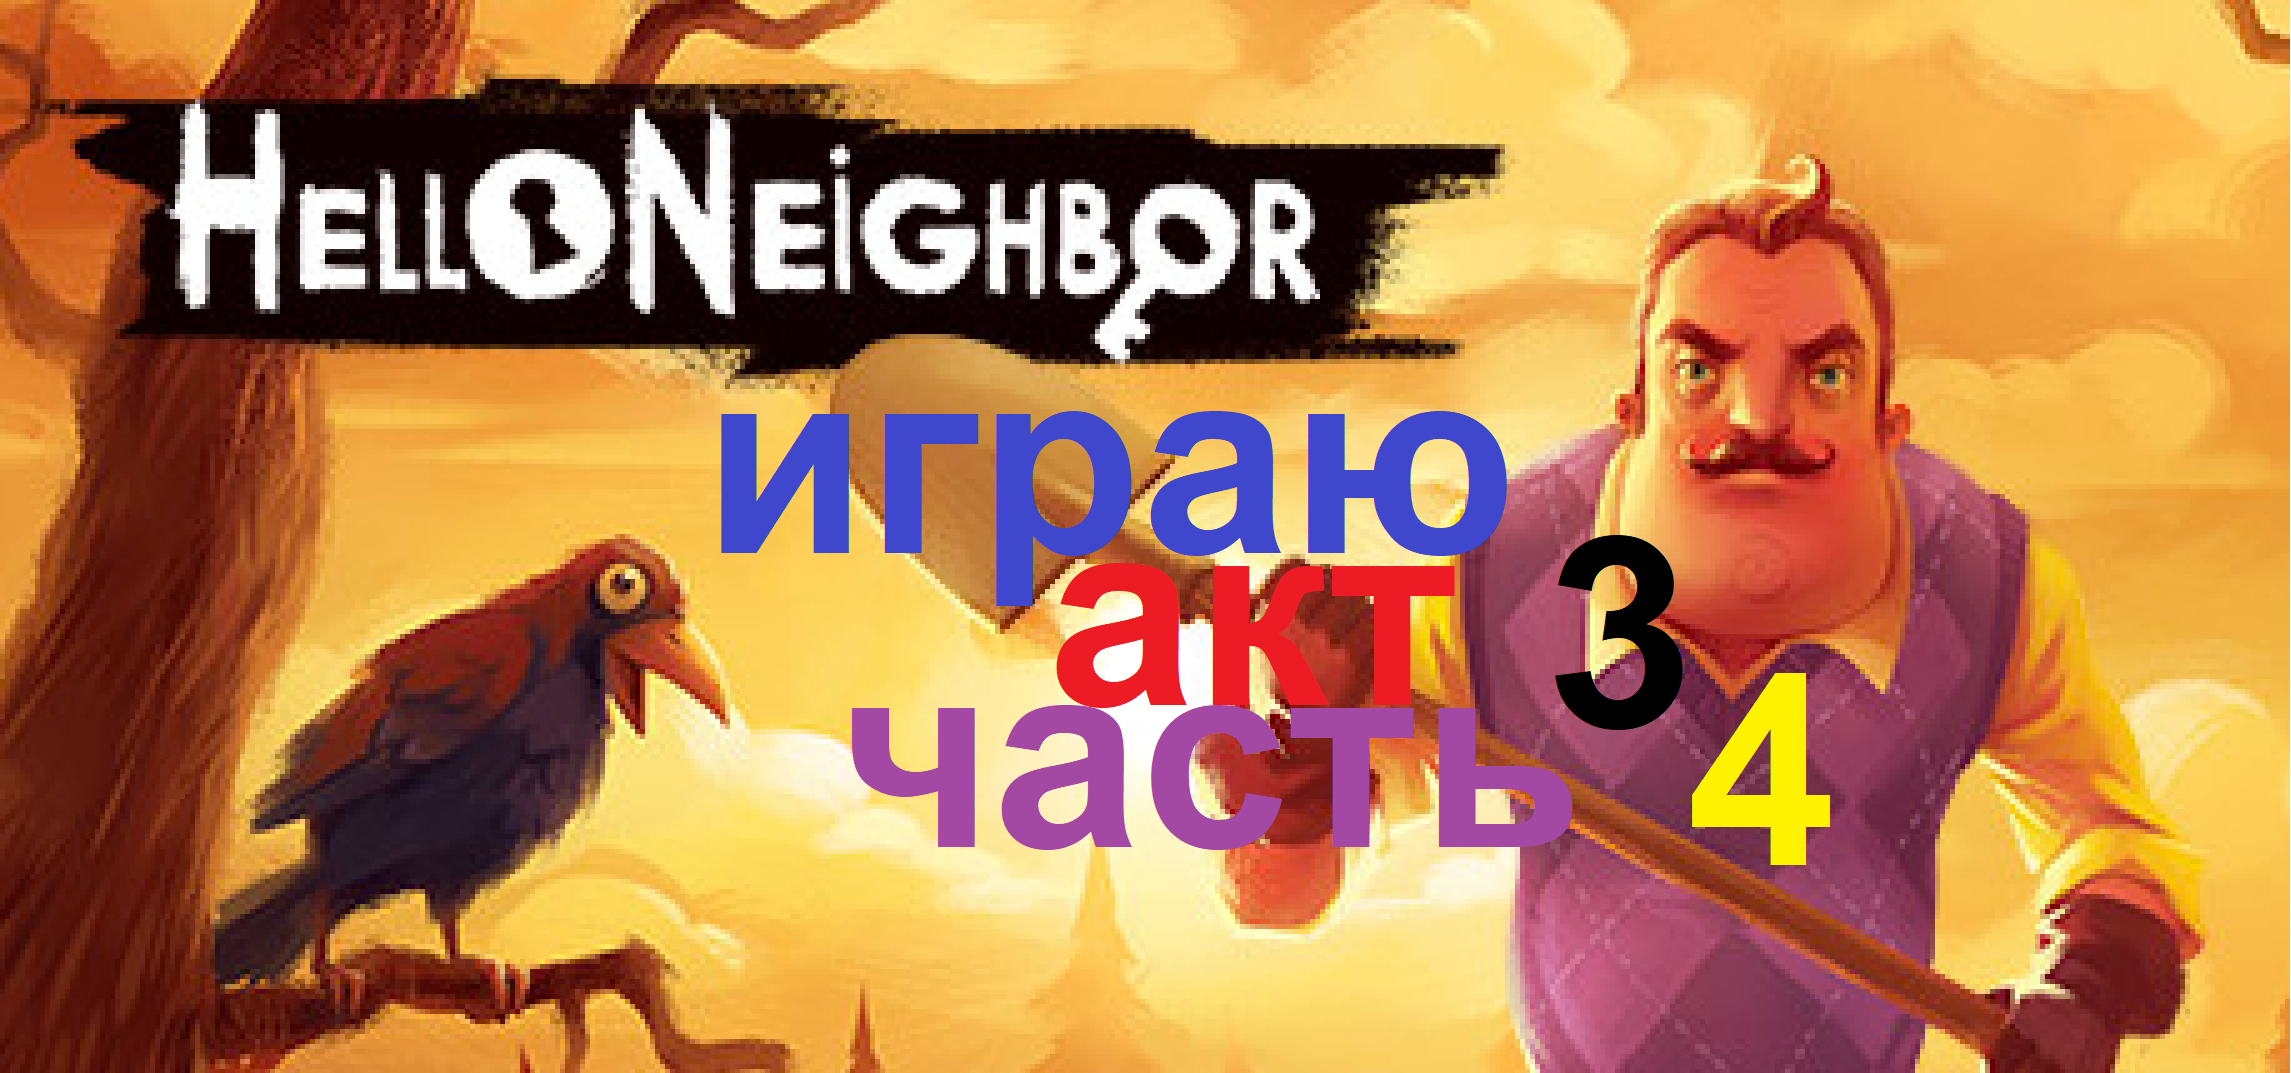 hellо neighbоr 1 играю акт 3 часть 4